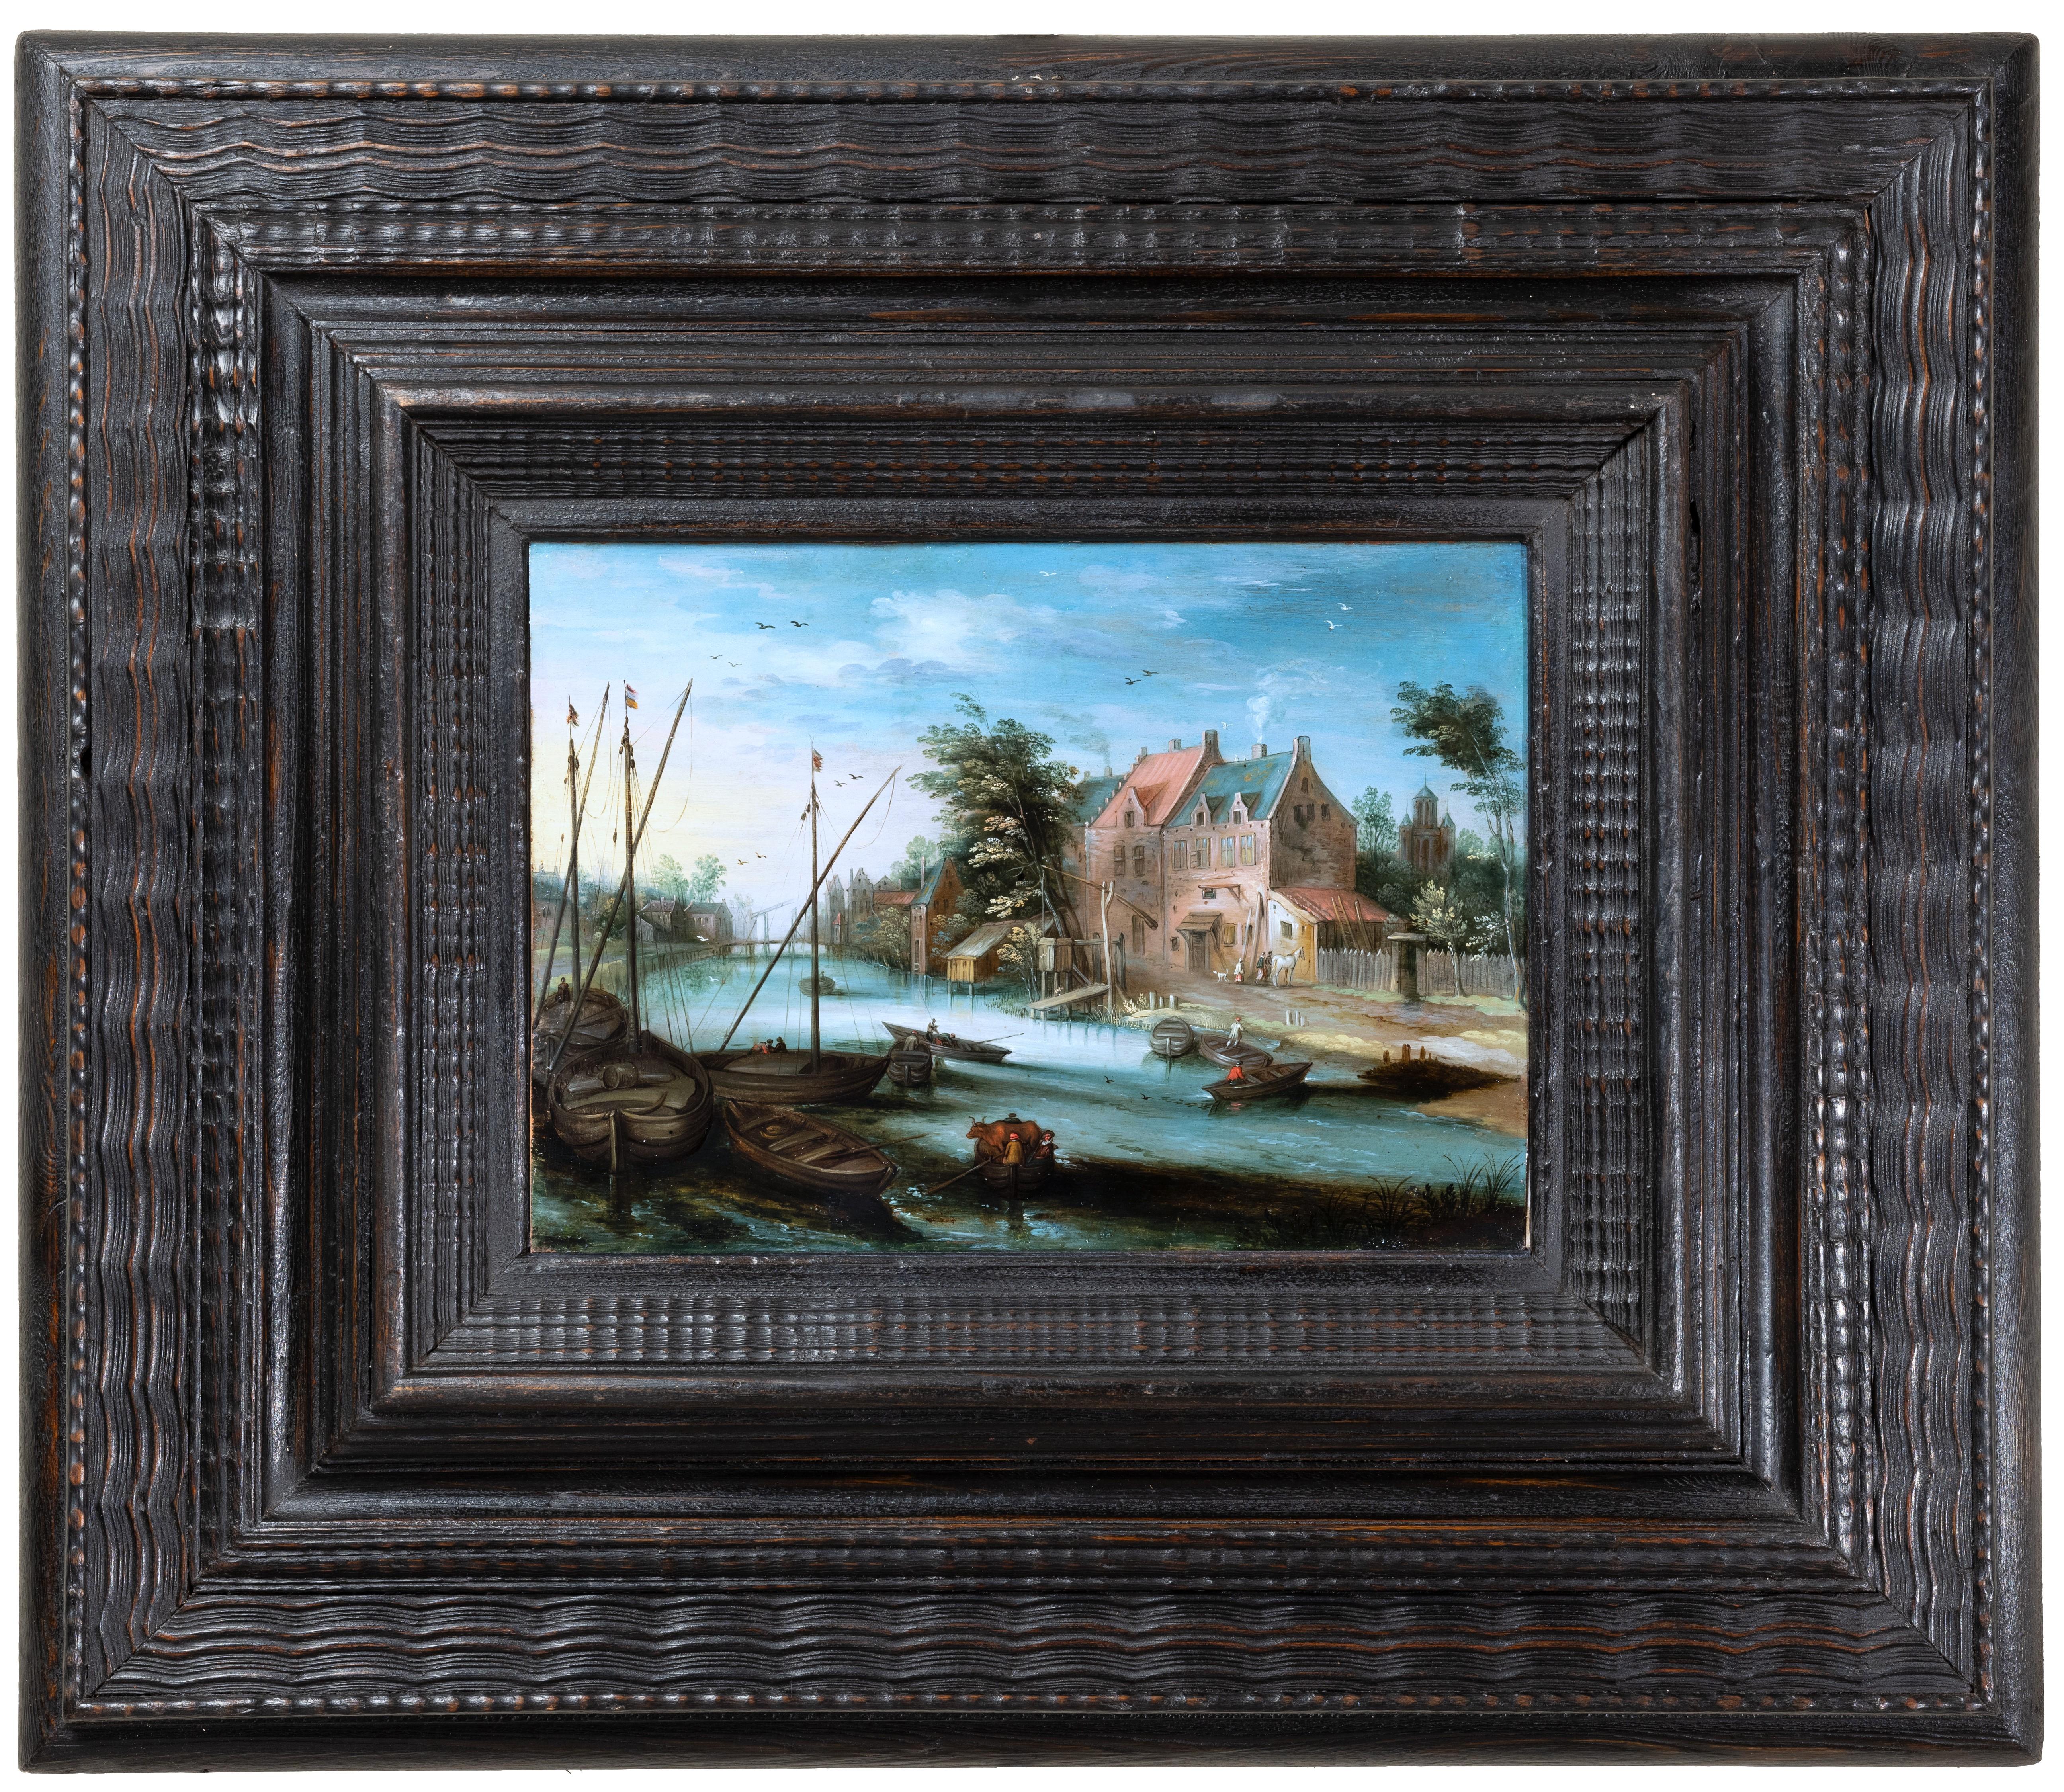 River landscape, studio of Jan Brueghel the Younger  17th century Antwerp school